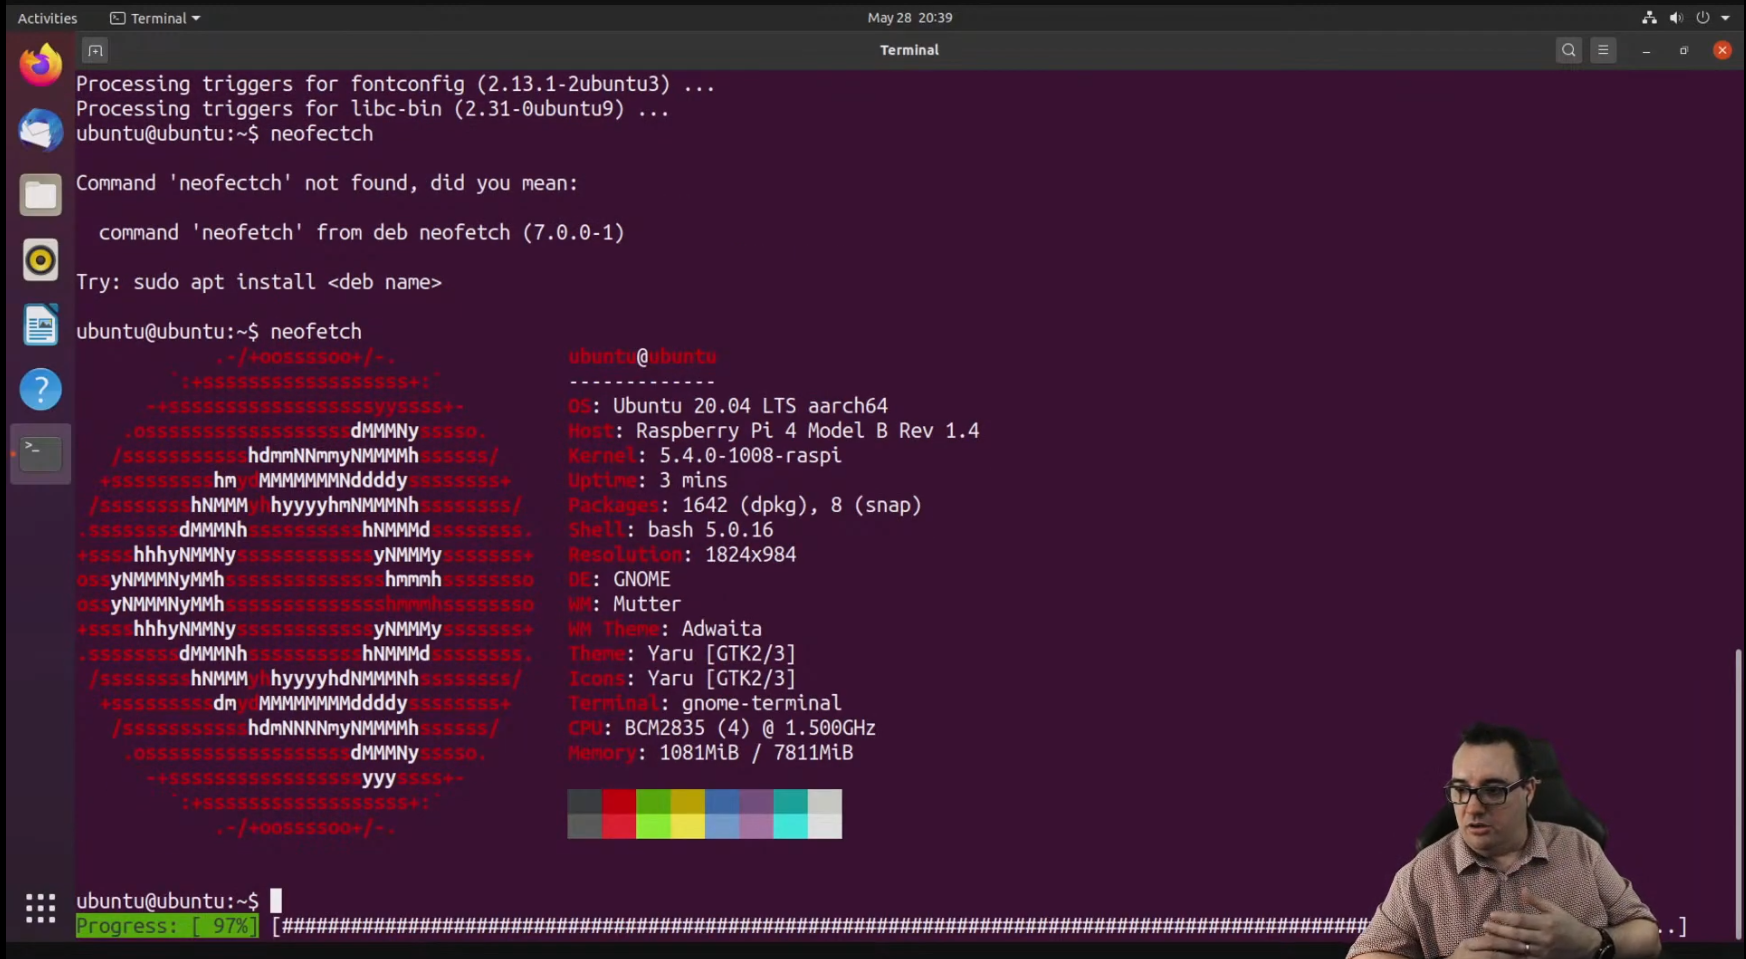 lezing daar ben ik het mee eens overschrijving Raspberry Pi 4: Could Ubuntu Be On The Way? | Tom's Hardware